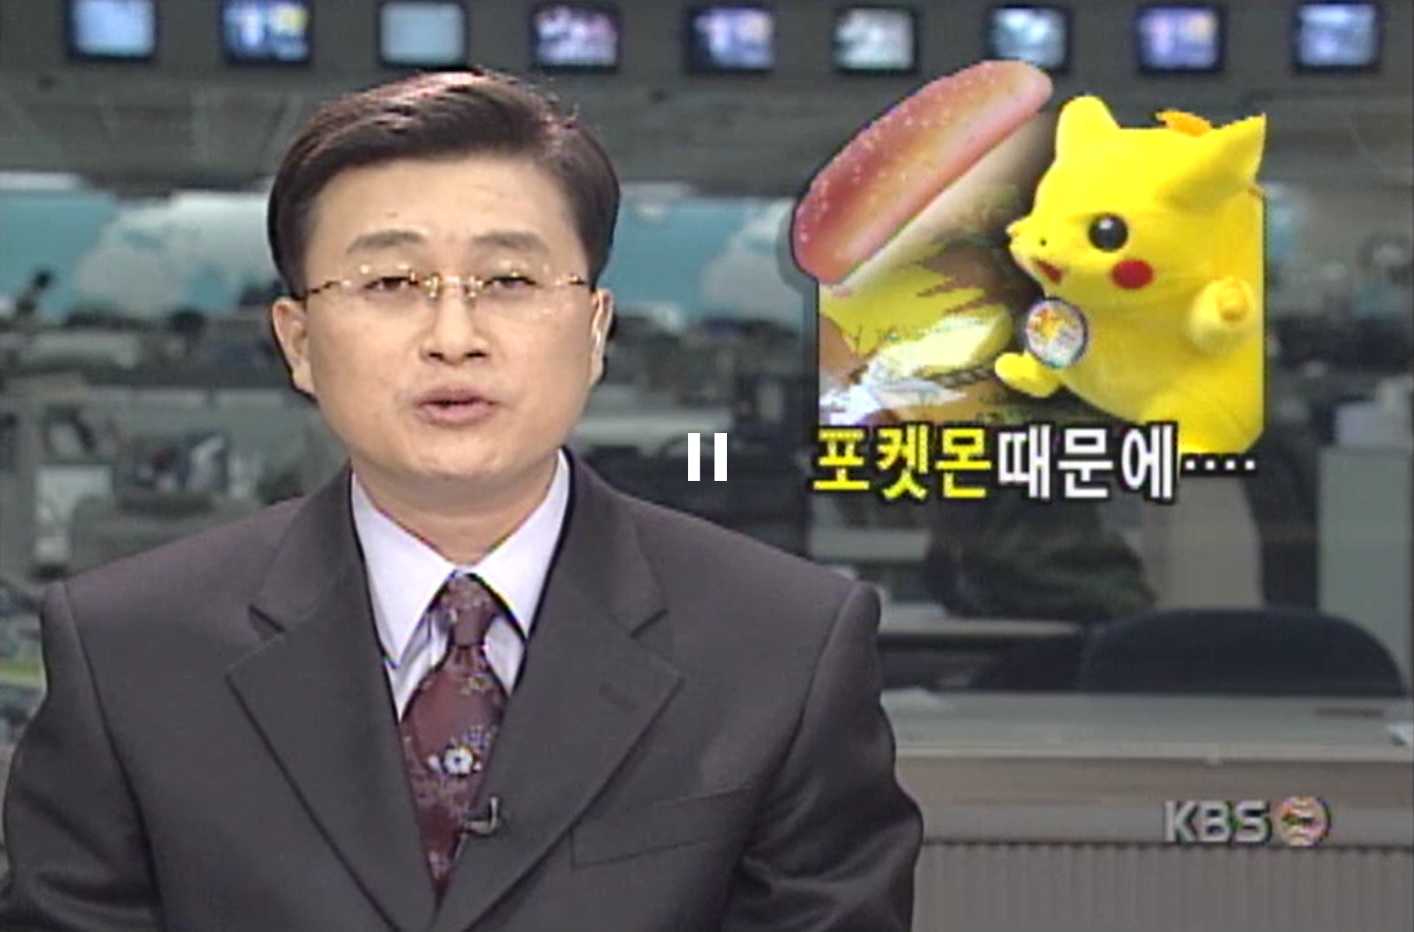 1999년 11월 KBS뉴스는 초등학생들이 포켓몬스터 스티커를 모으려 멀쩡한 빵을 버리고 있다는 비판 기사를 보도했다. KBS뉴스 캡처